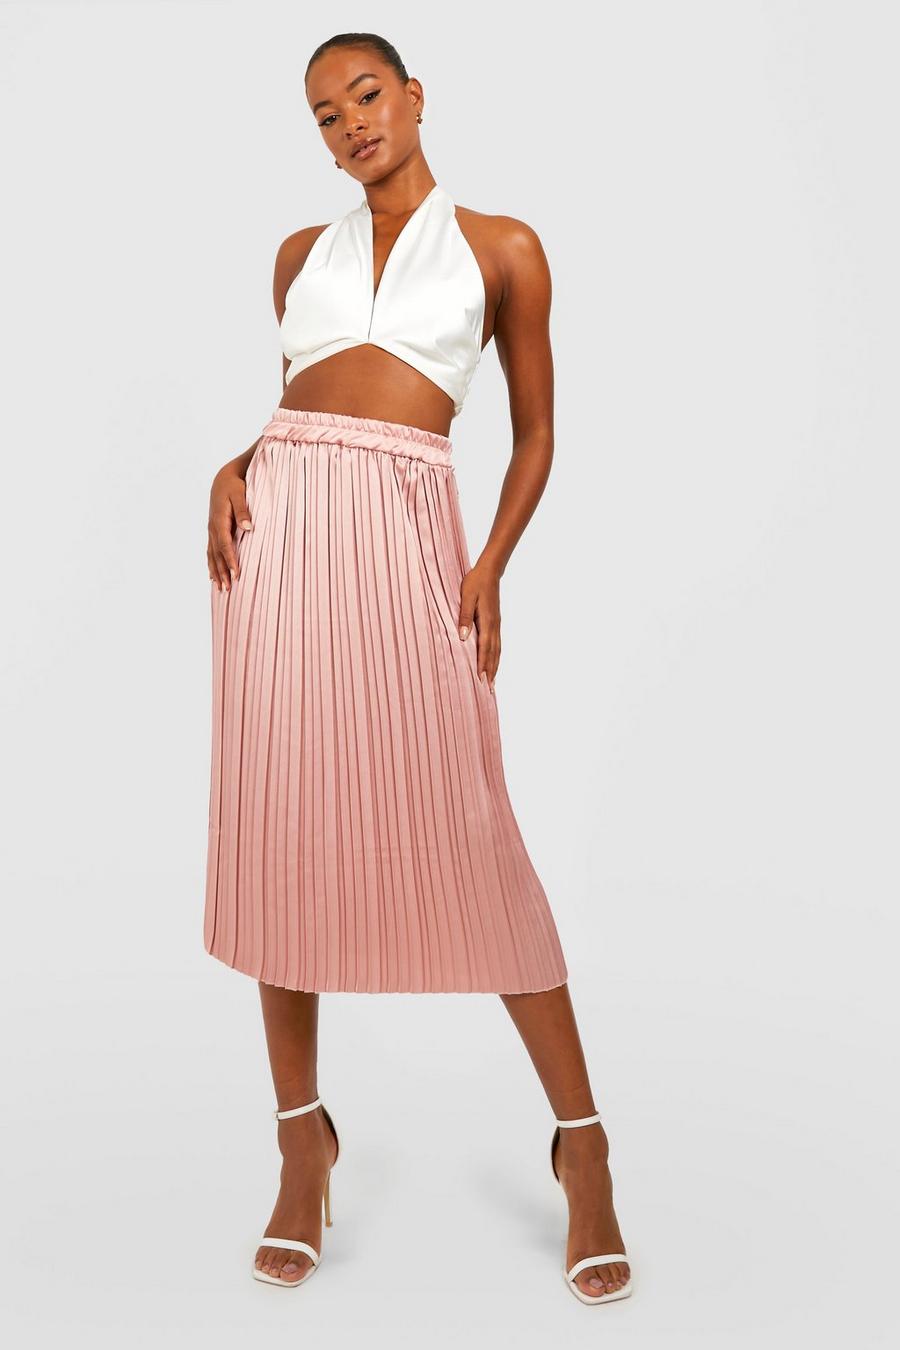 סמוק pink חצאית מידי מסאטן עם קפל, לנשים גבוהות image number 1